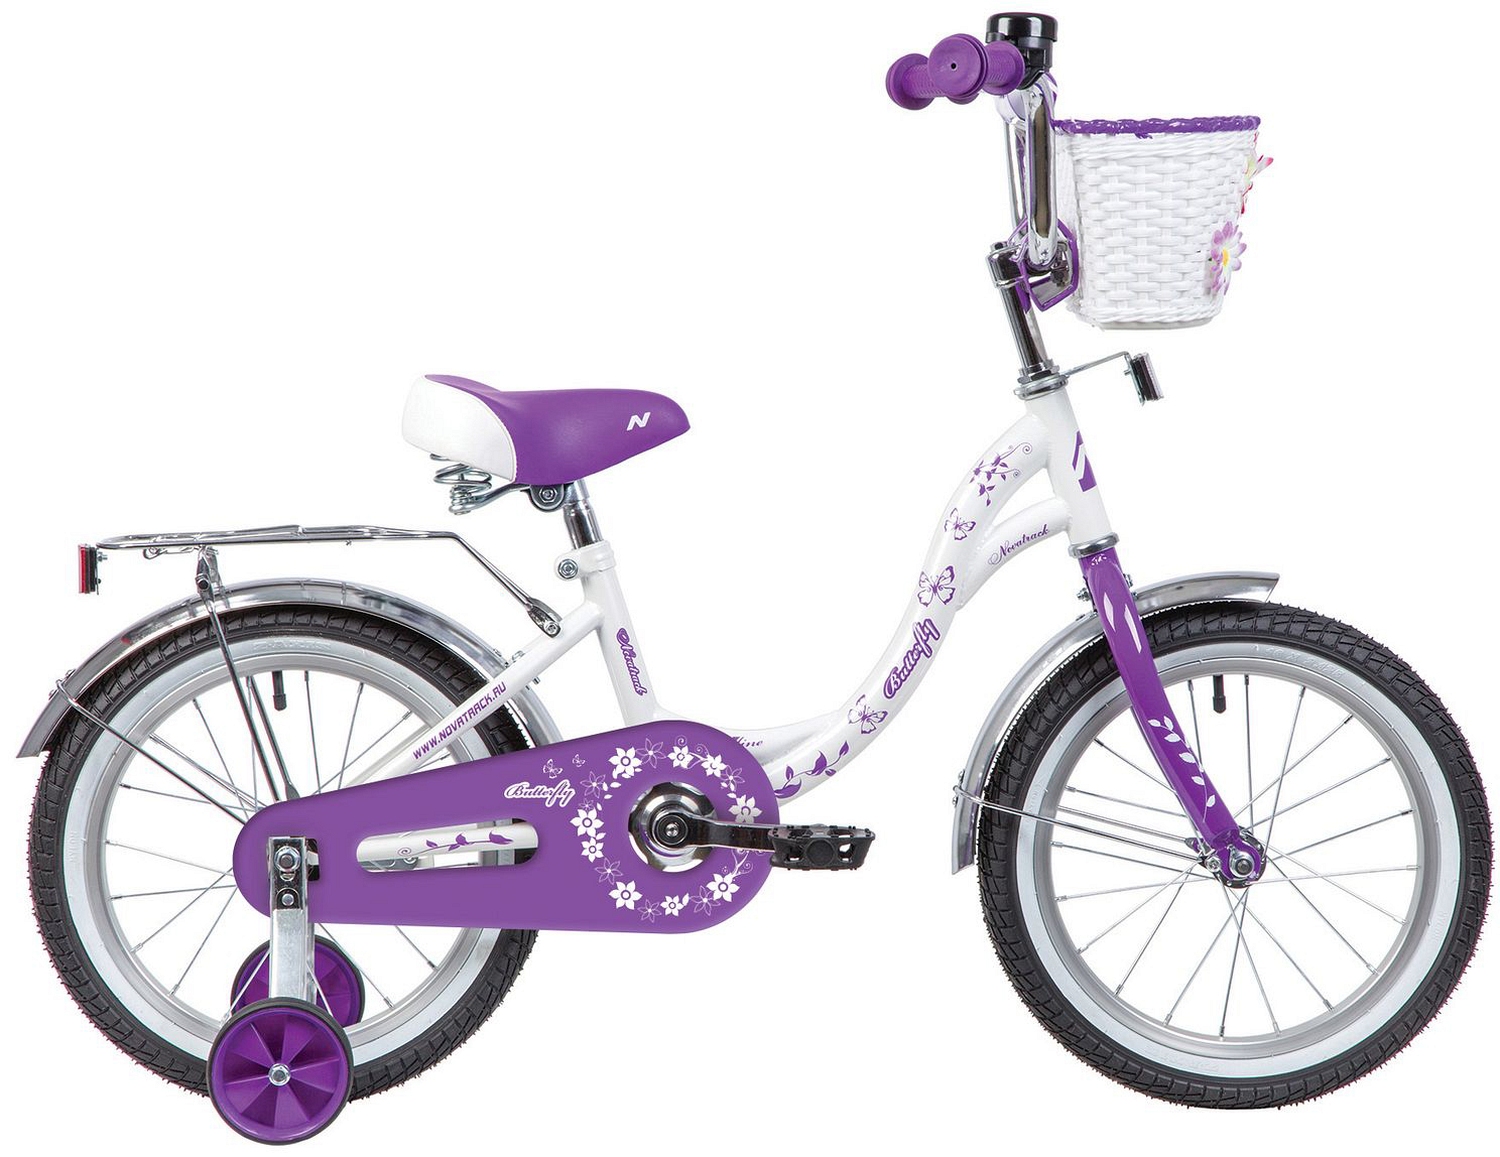  Отзывы о Детском велосипеде Novatrack Butterfly 16 2020